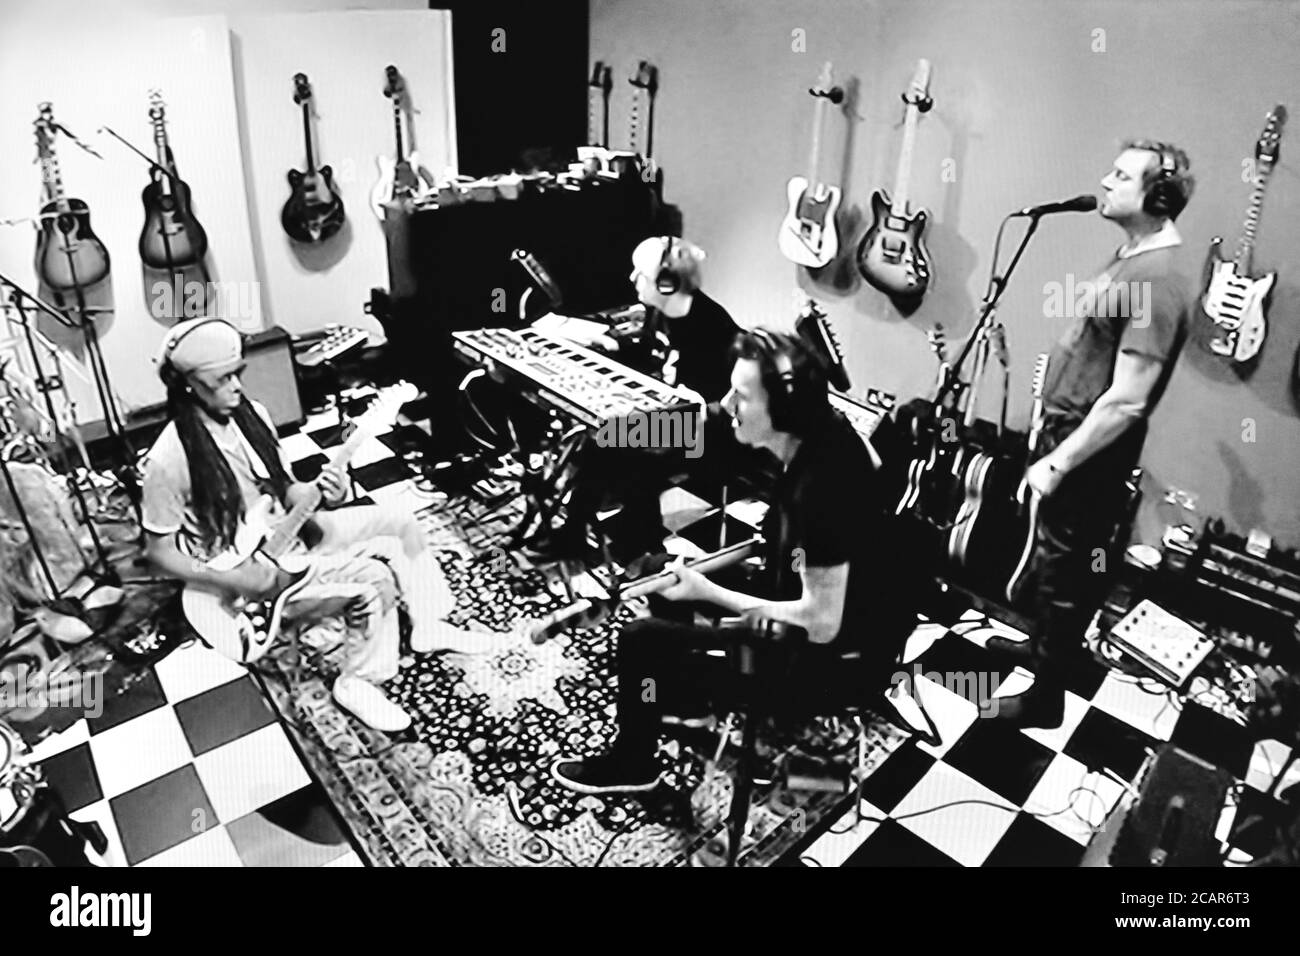 DURAN Duran et Nile Rodgers coopération en studio d'enregistrement - 1986 Banque D'Images